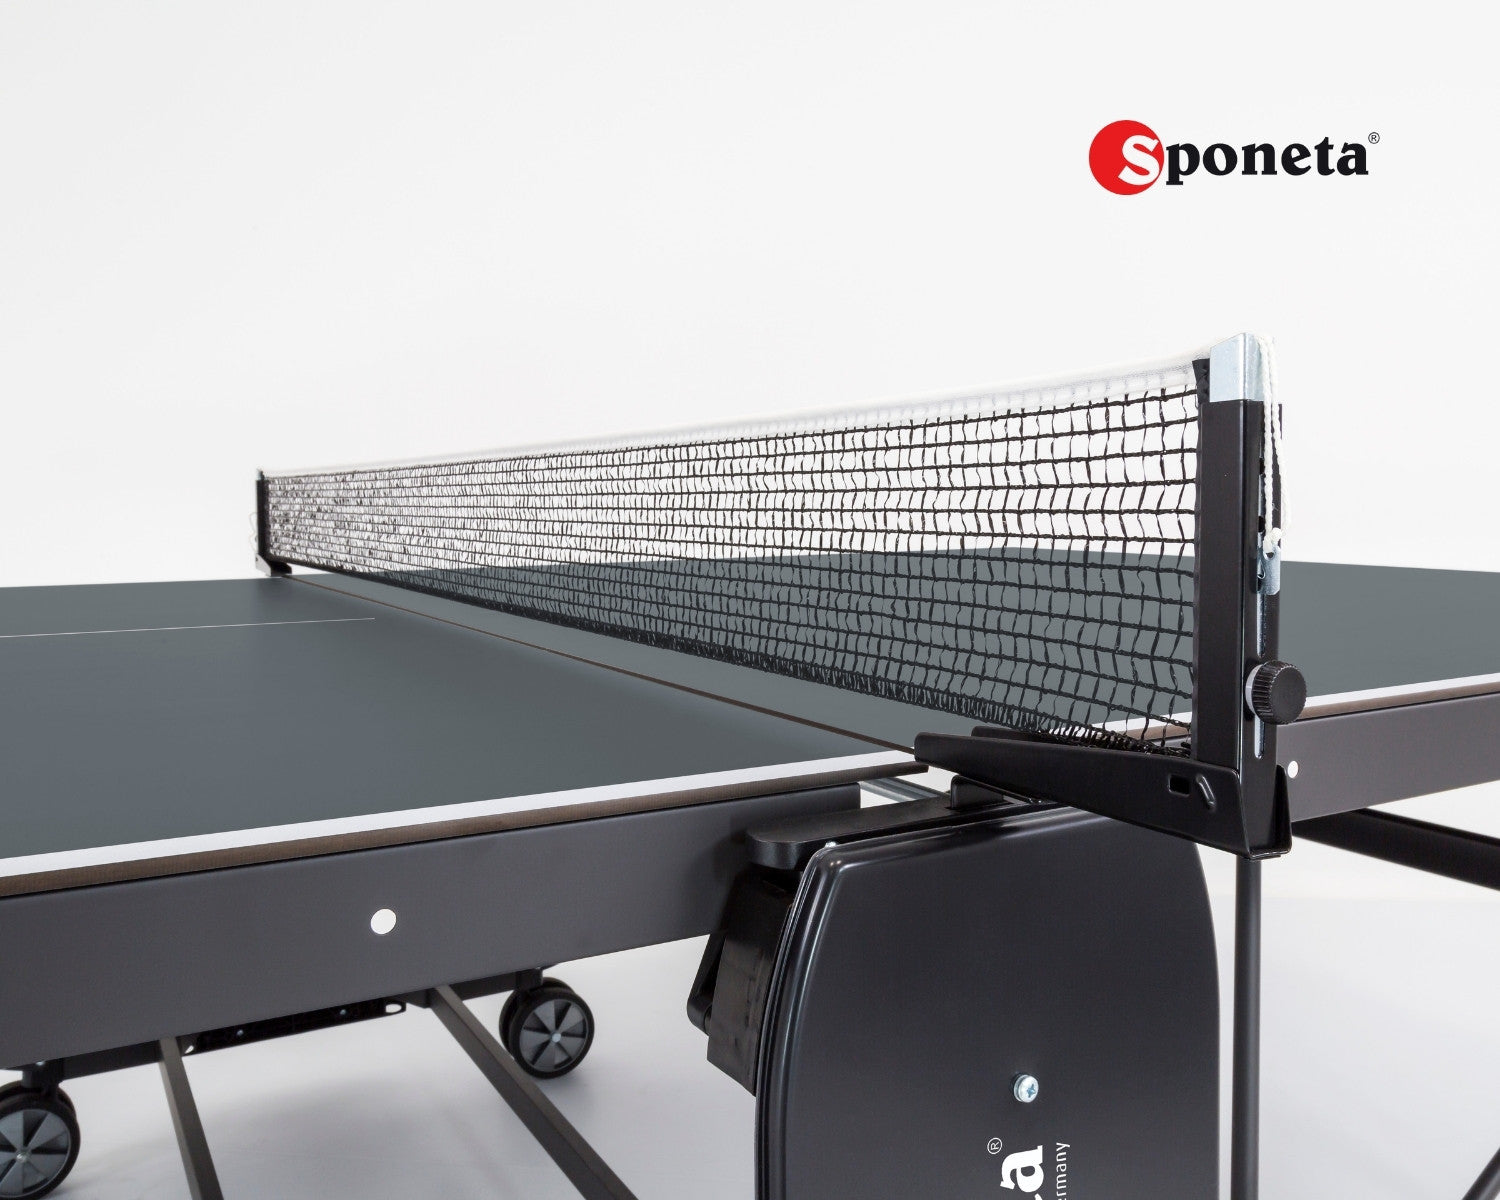 Sponeta Tavolo da Ping Pong Outdoor S 4-70 e